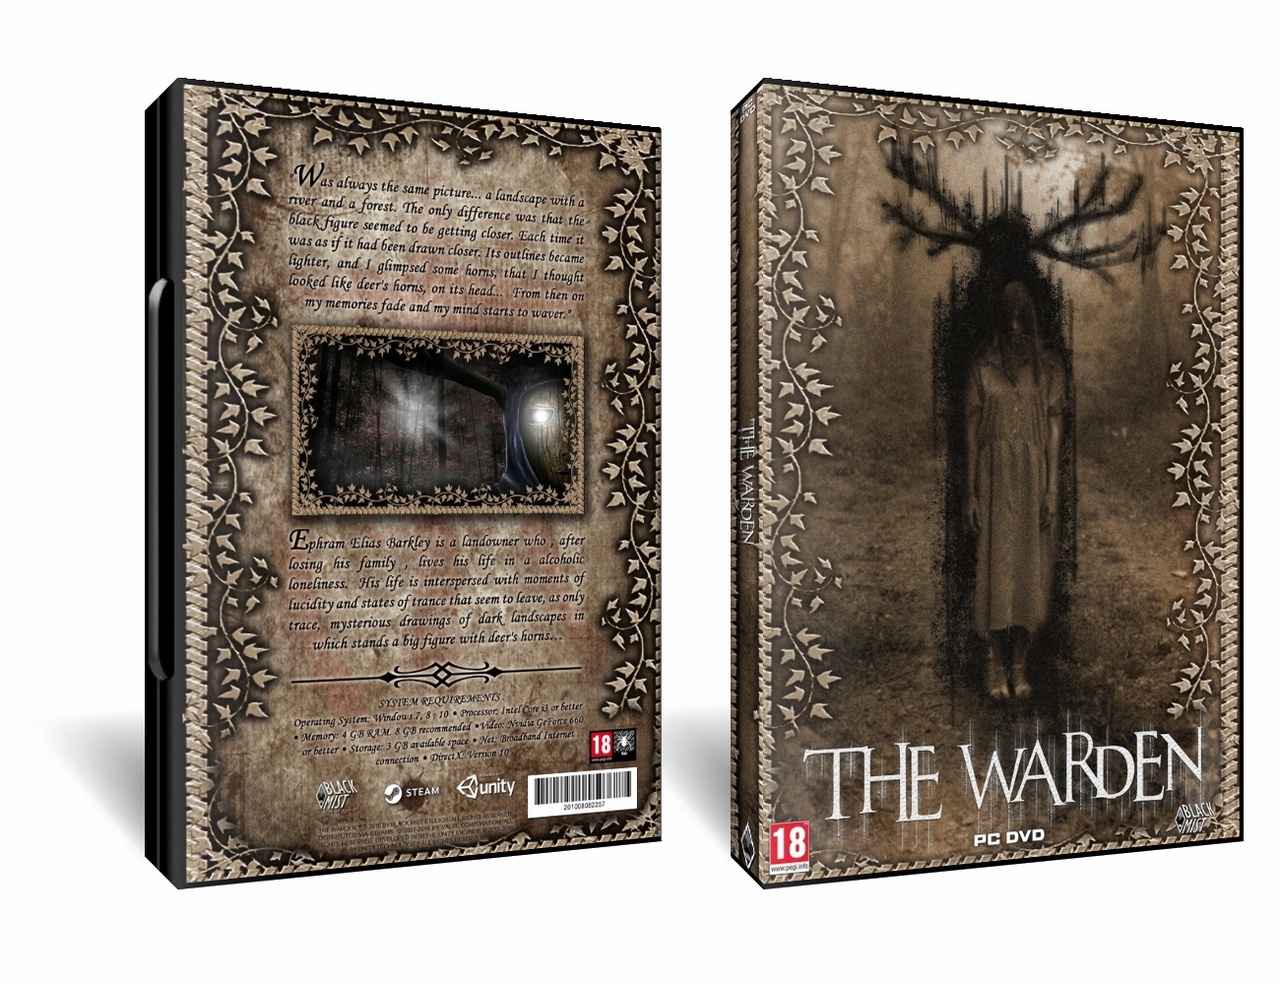 The Warden box cover